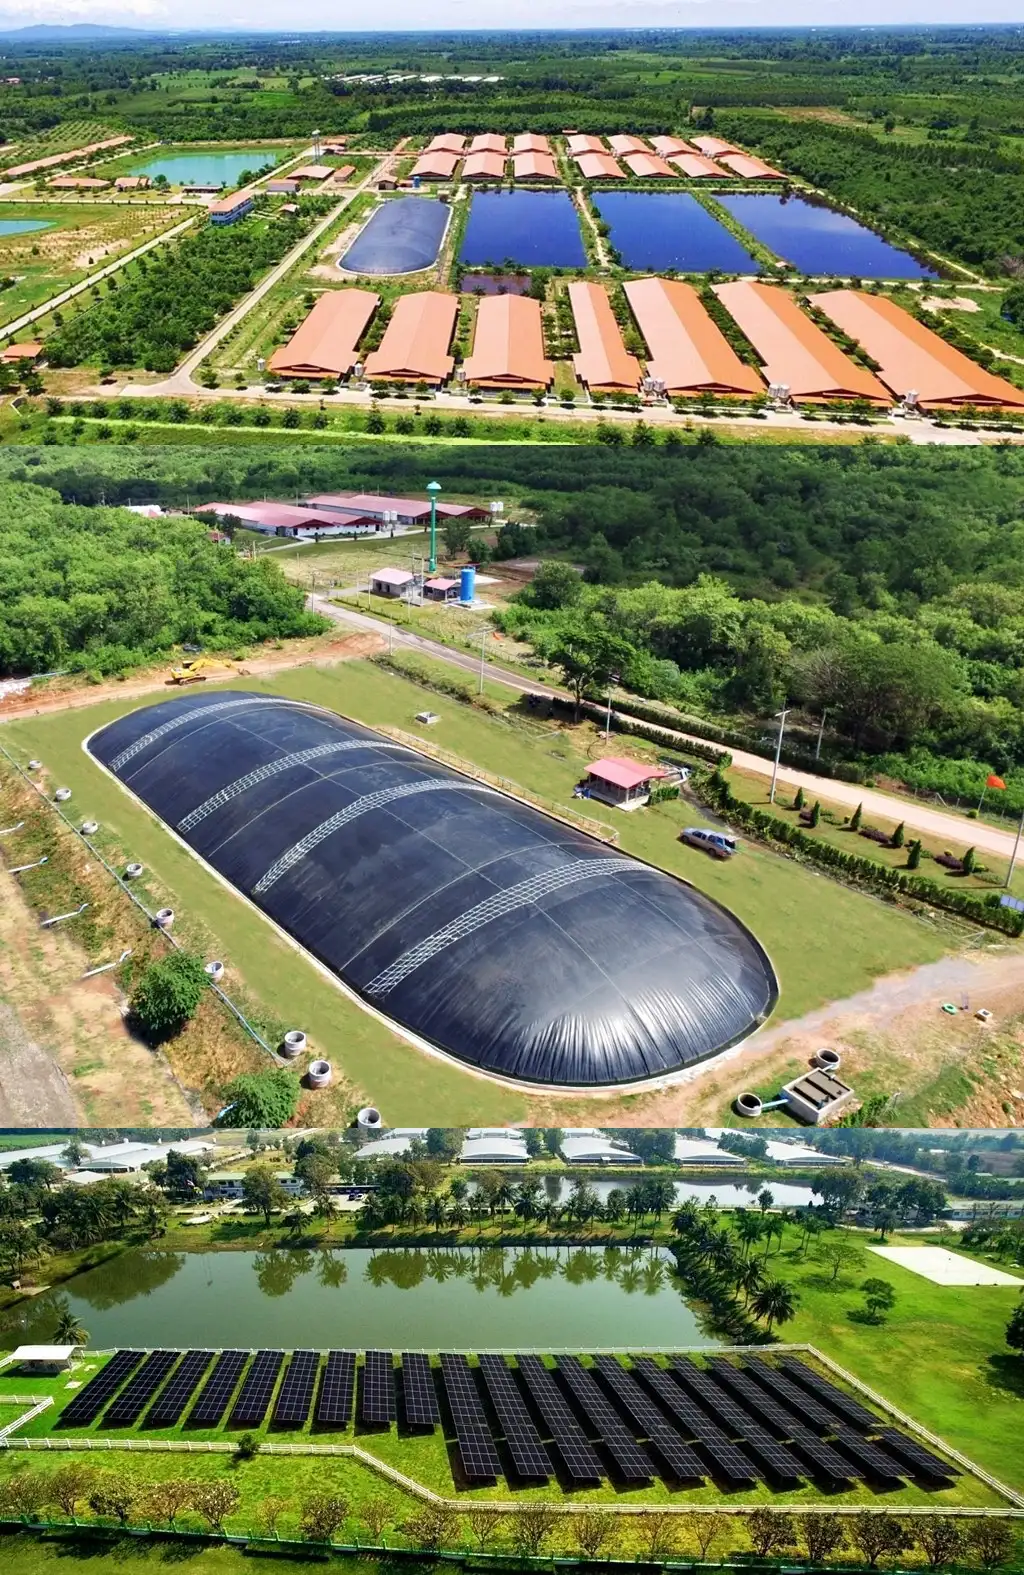 Greenfarm CPF ฟาร์มหมูรักษ์โลก ใช้ ไบโอแก๊ส-โซลาร์ฟาร์ม เป็นพลังงานทดแทน HealthServ